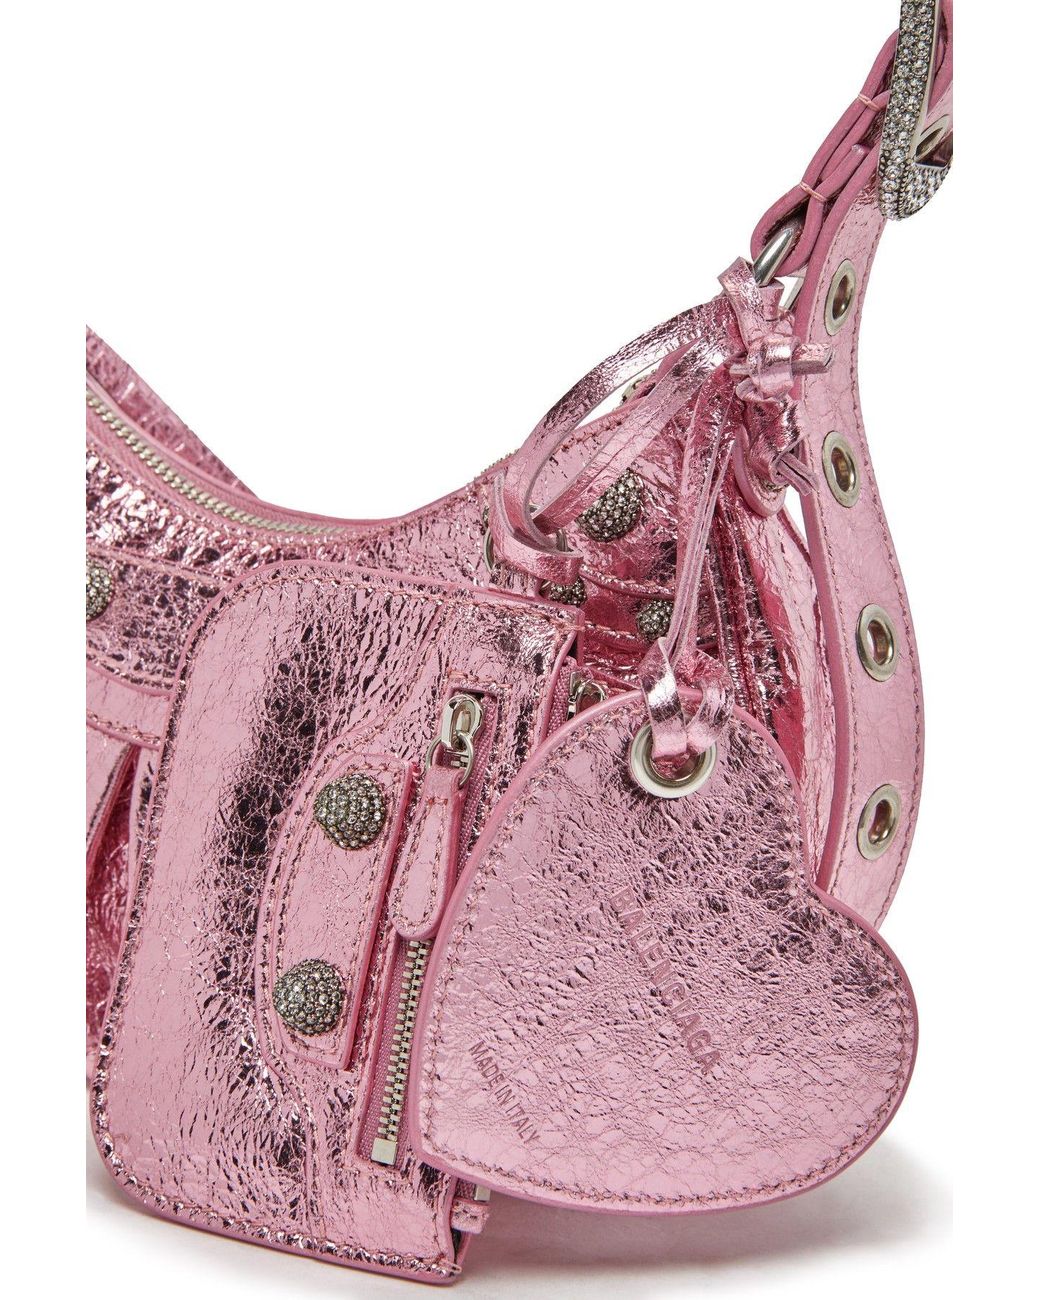 Pink Swan Crystal Handbag Clutch Rhinestone Evening Bag Womens Prom Party  Purse | eBay